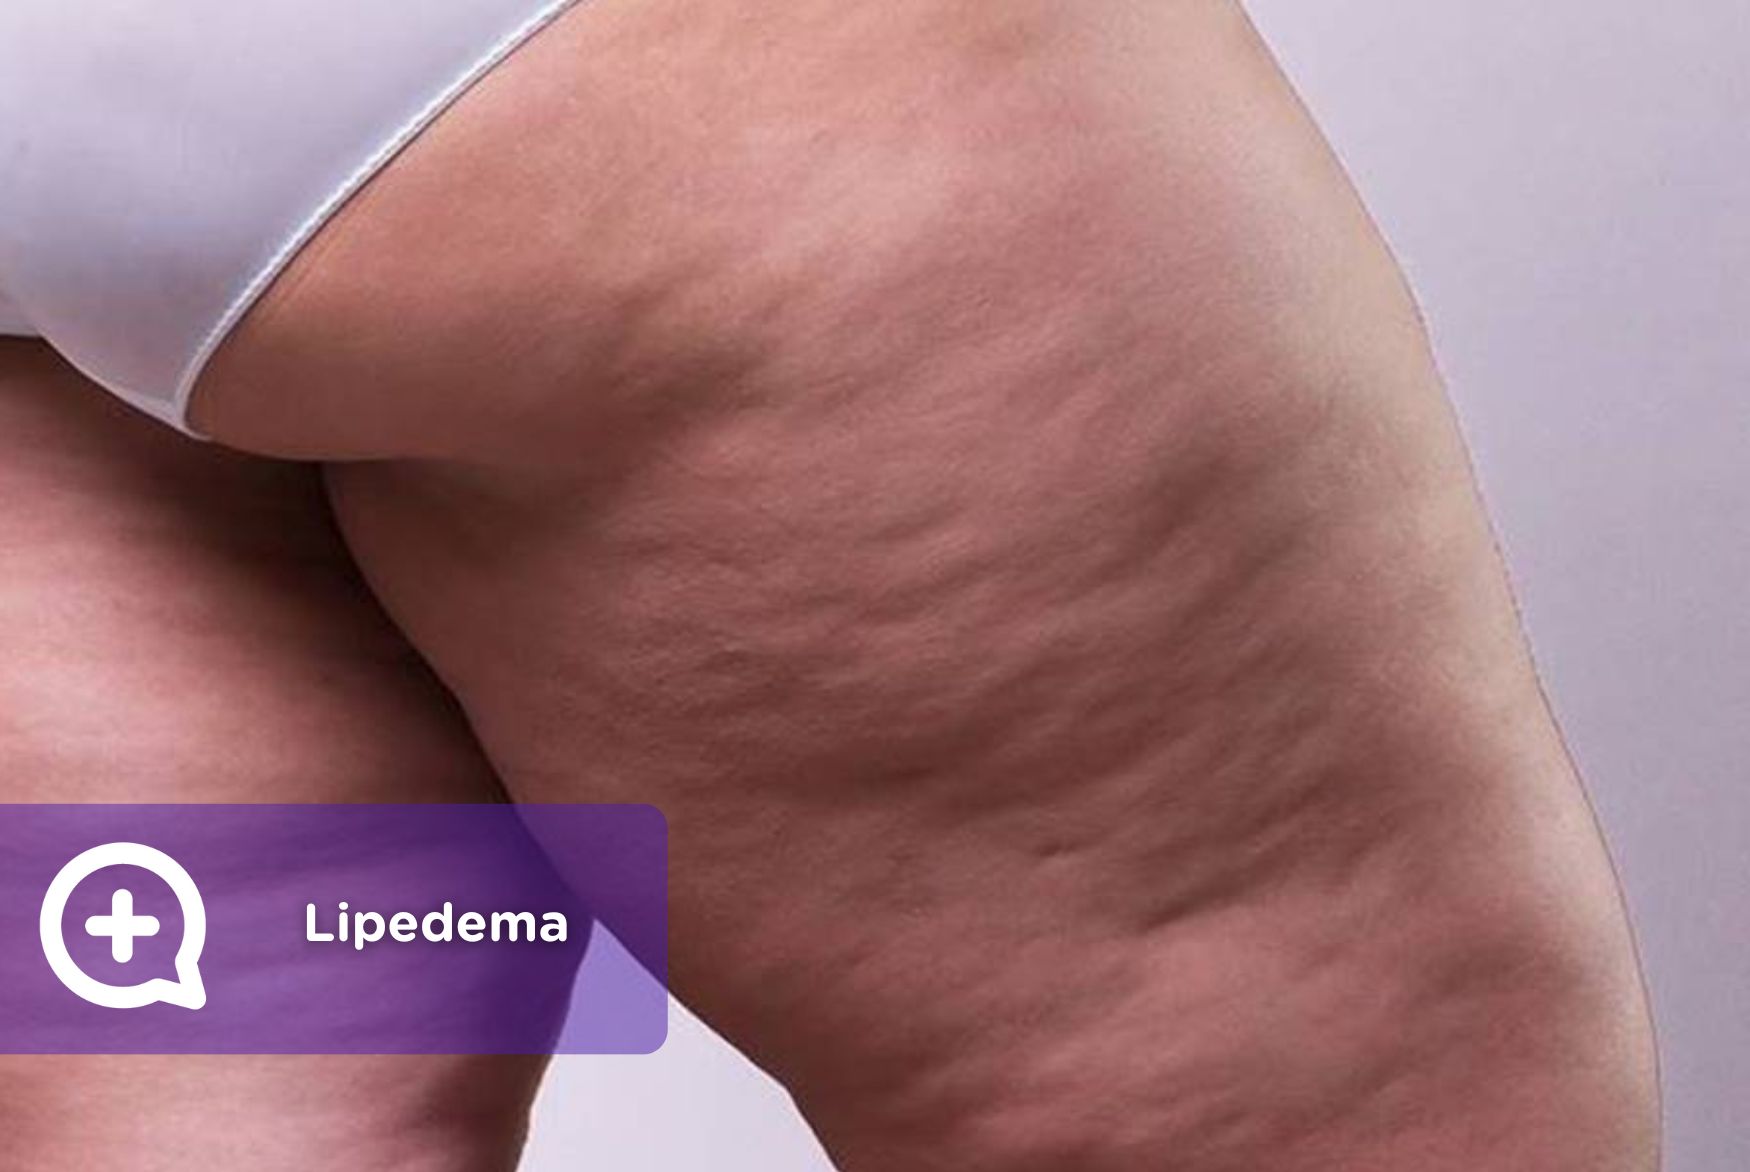 Desvendando o Lipedema: diagnóstico e tratamento de uma doença subestimada